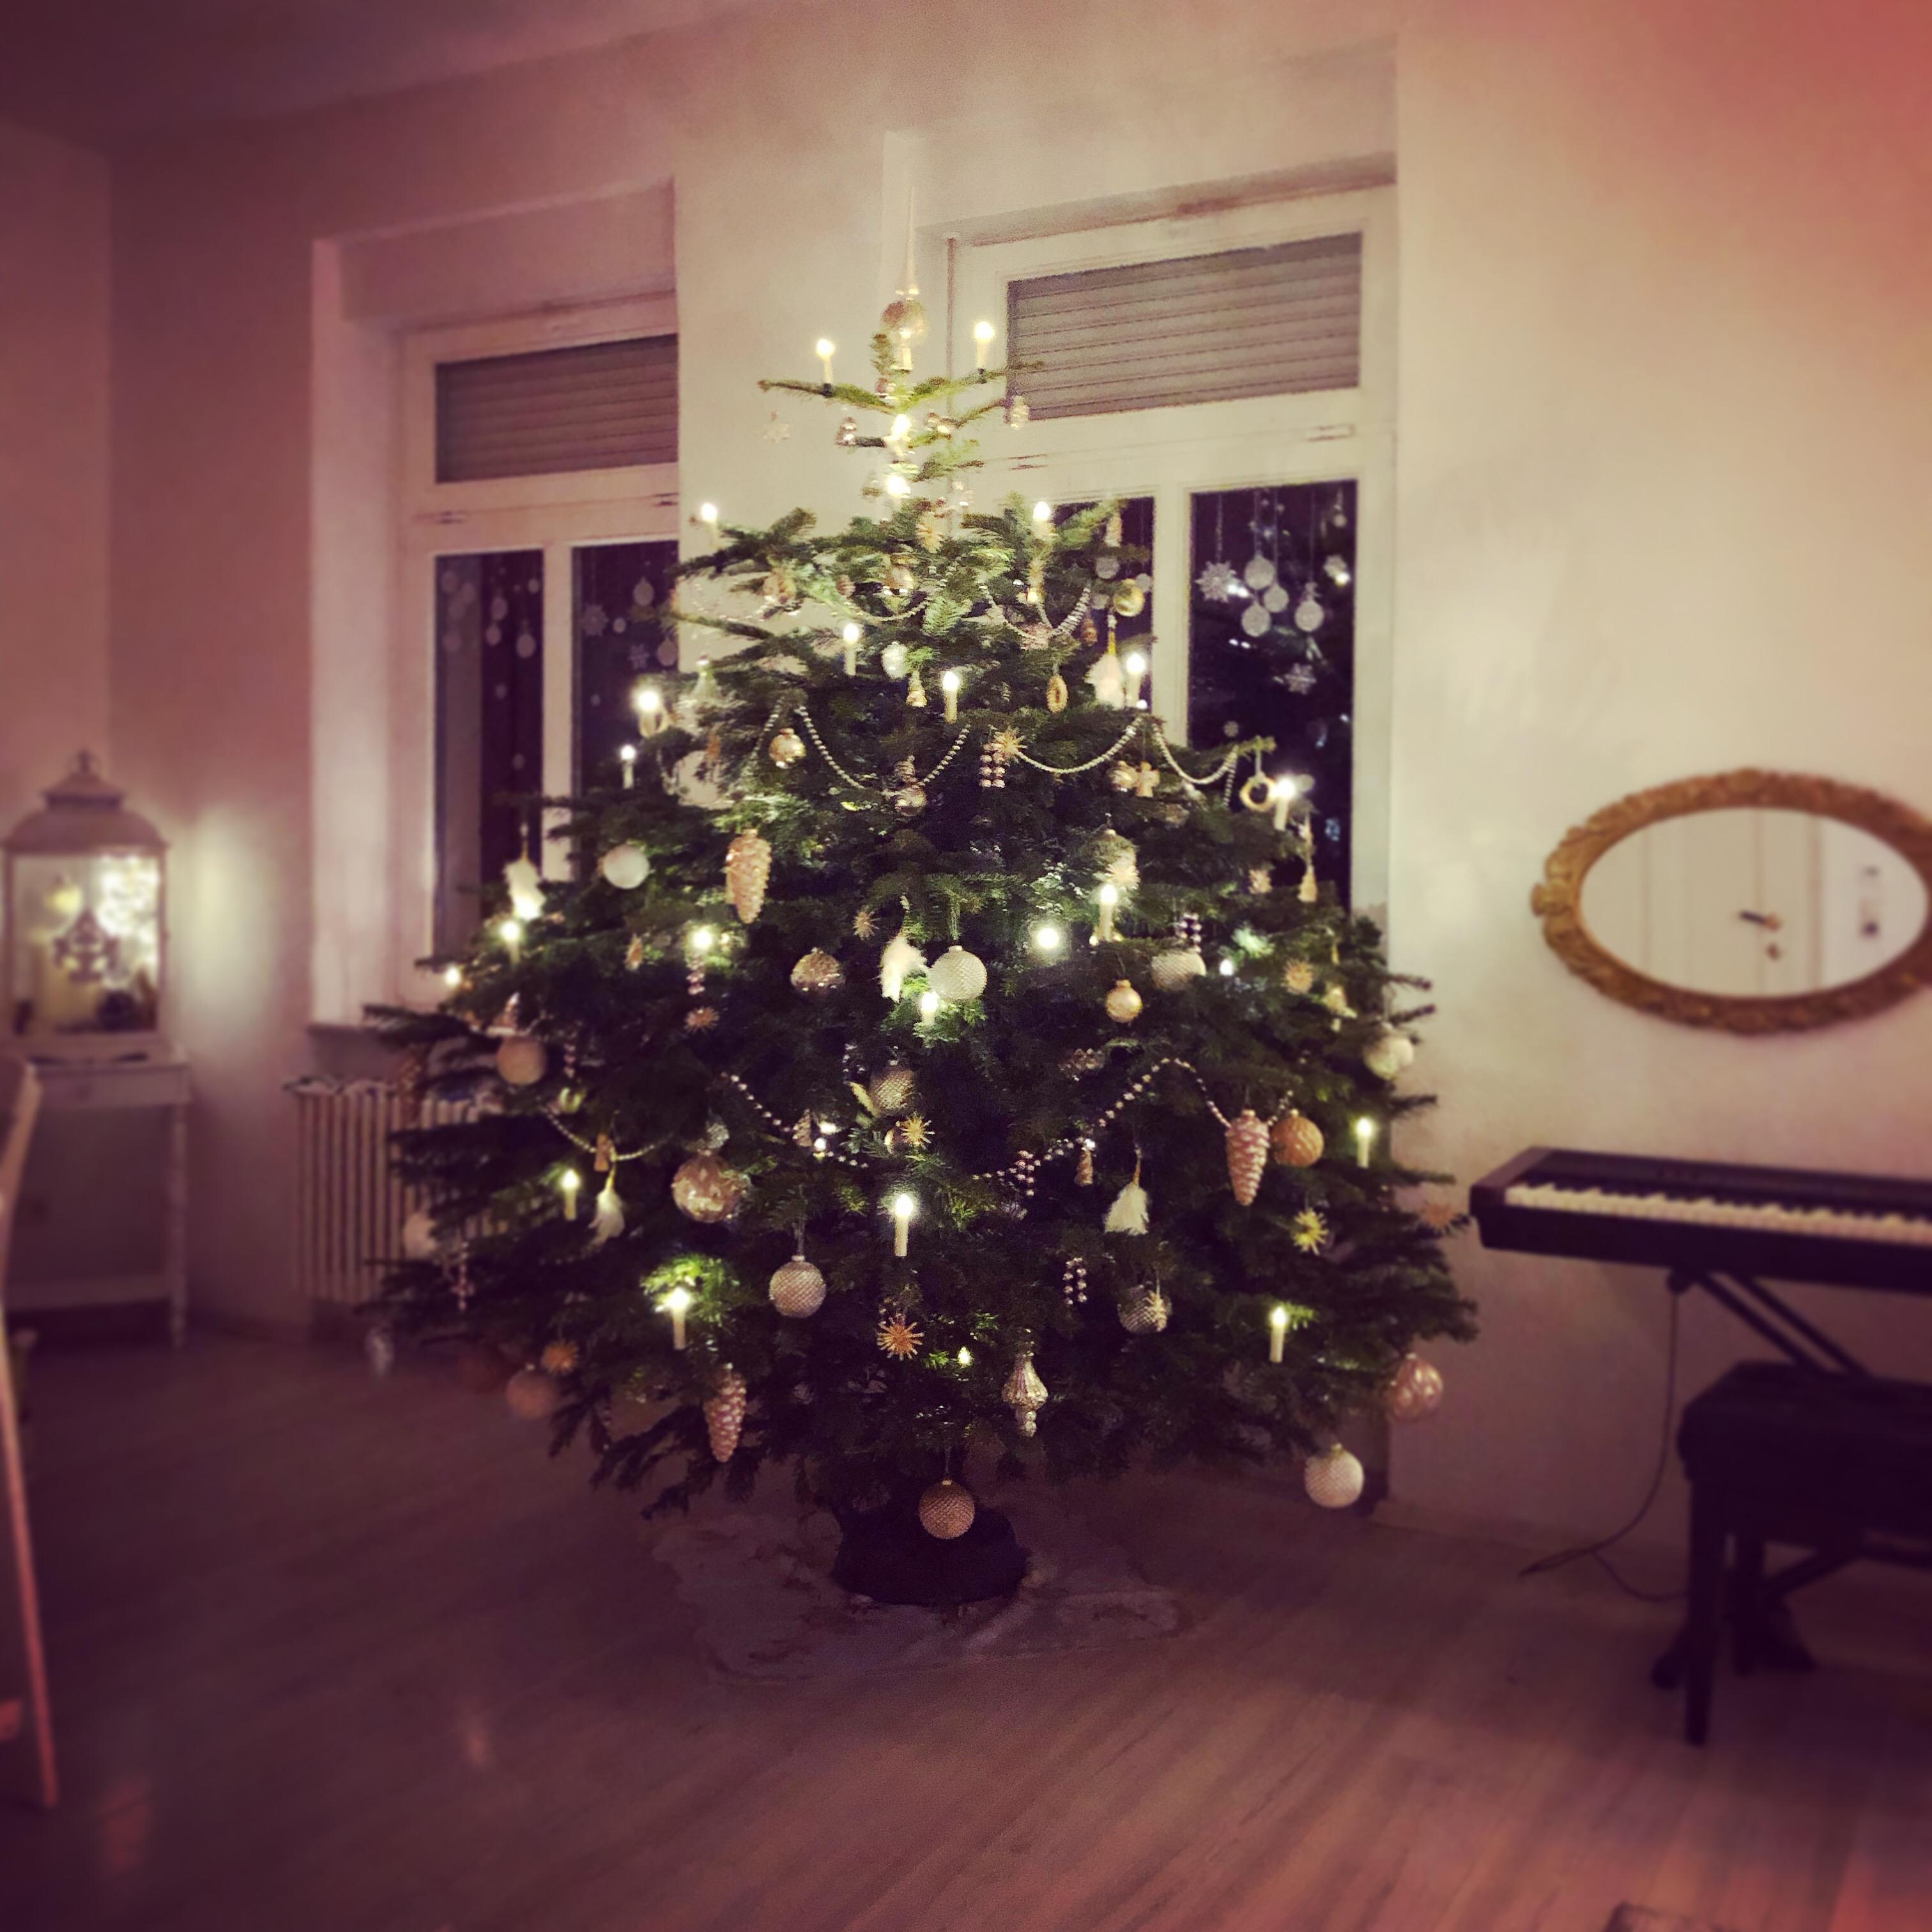 Unser Weihnachtsbaum 2019 🎄 Wir nennen ihn liebevoll Buschi 🎅